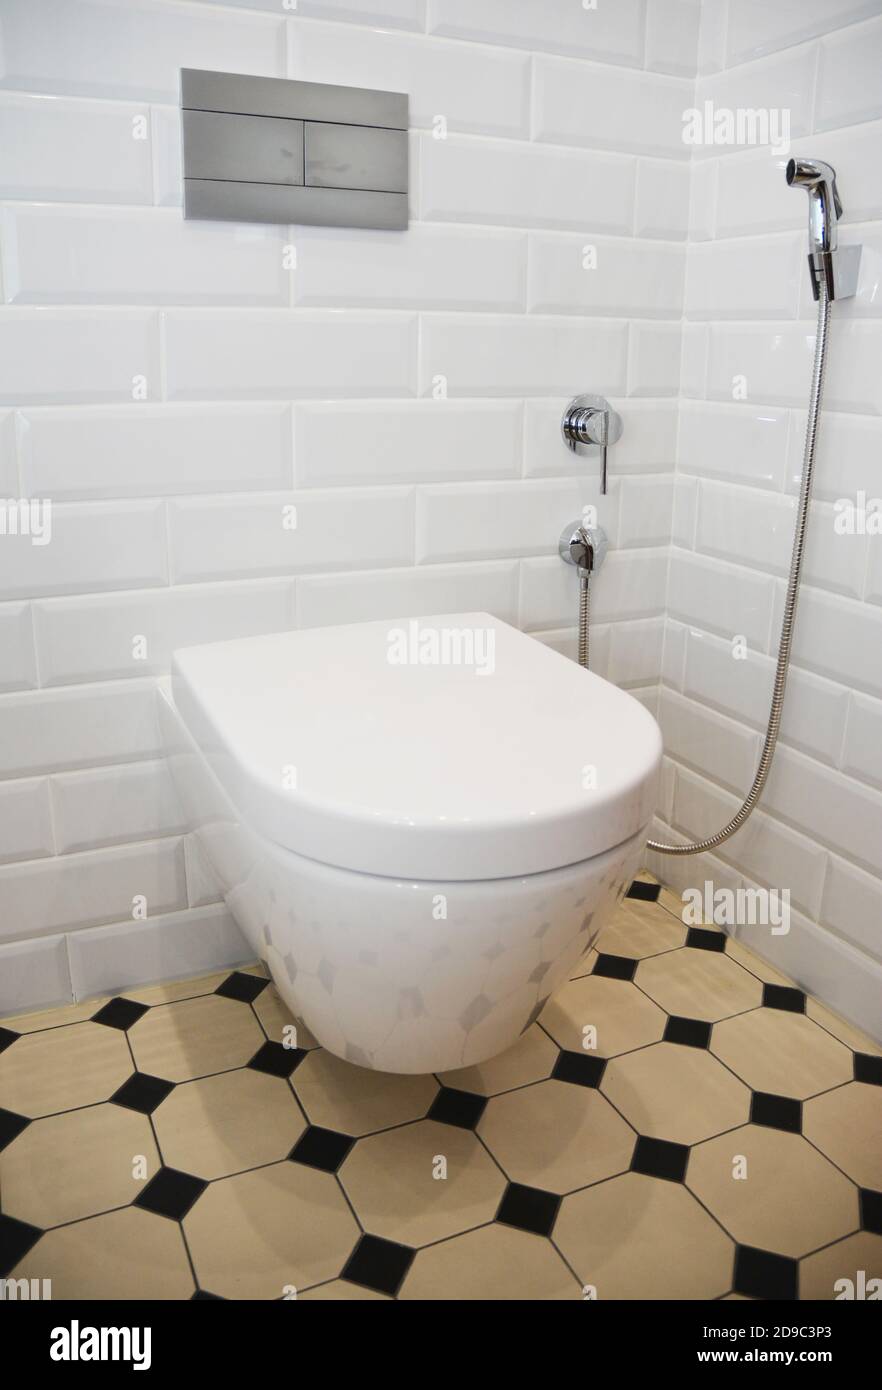 Une salle de toilette rénovée de style rétro avec des murs carrelés de blanc, des carreaux de sol jaune et noir, un bol de toilette en céramique fixé au mur et un bidet à la main Banque D'Images